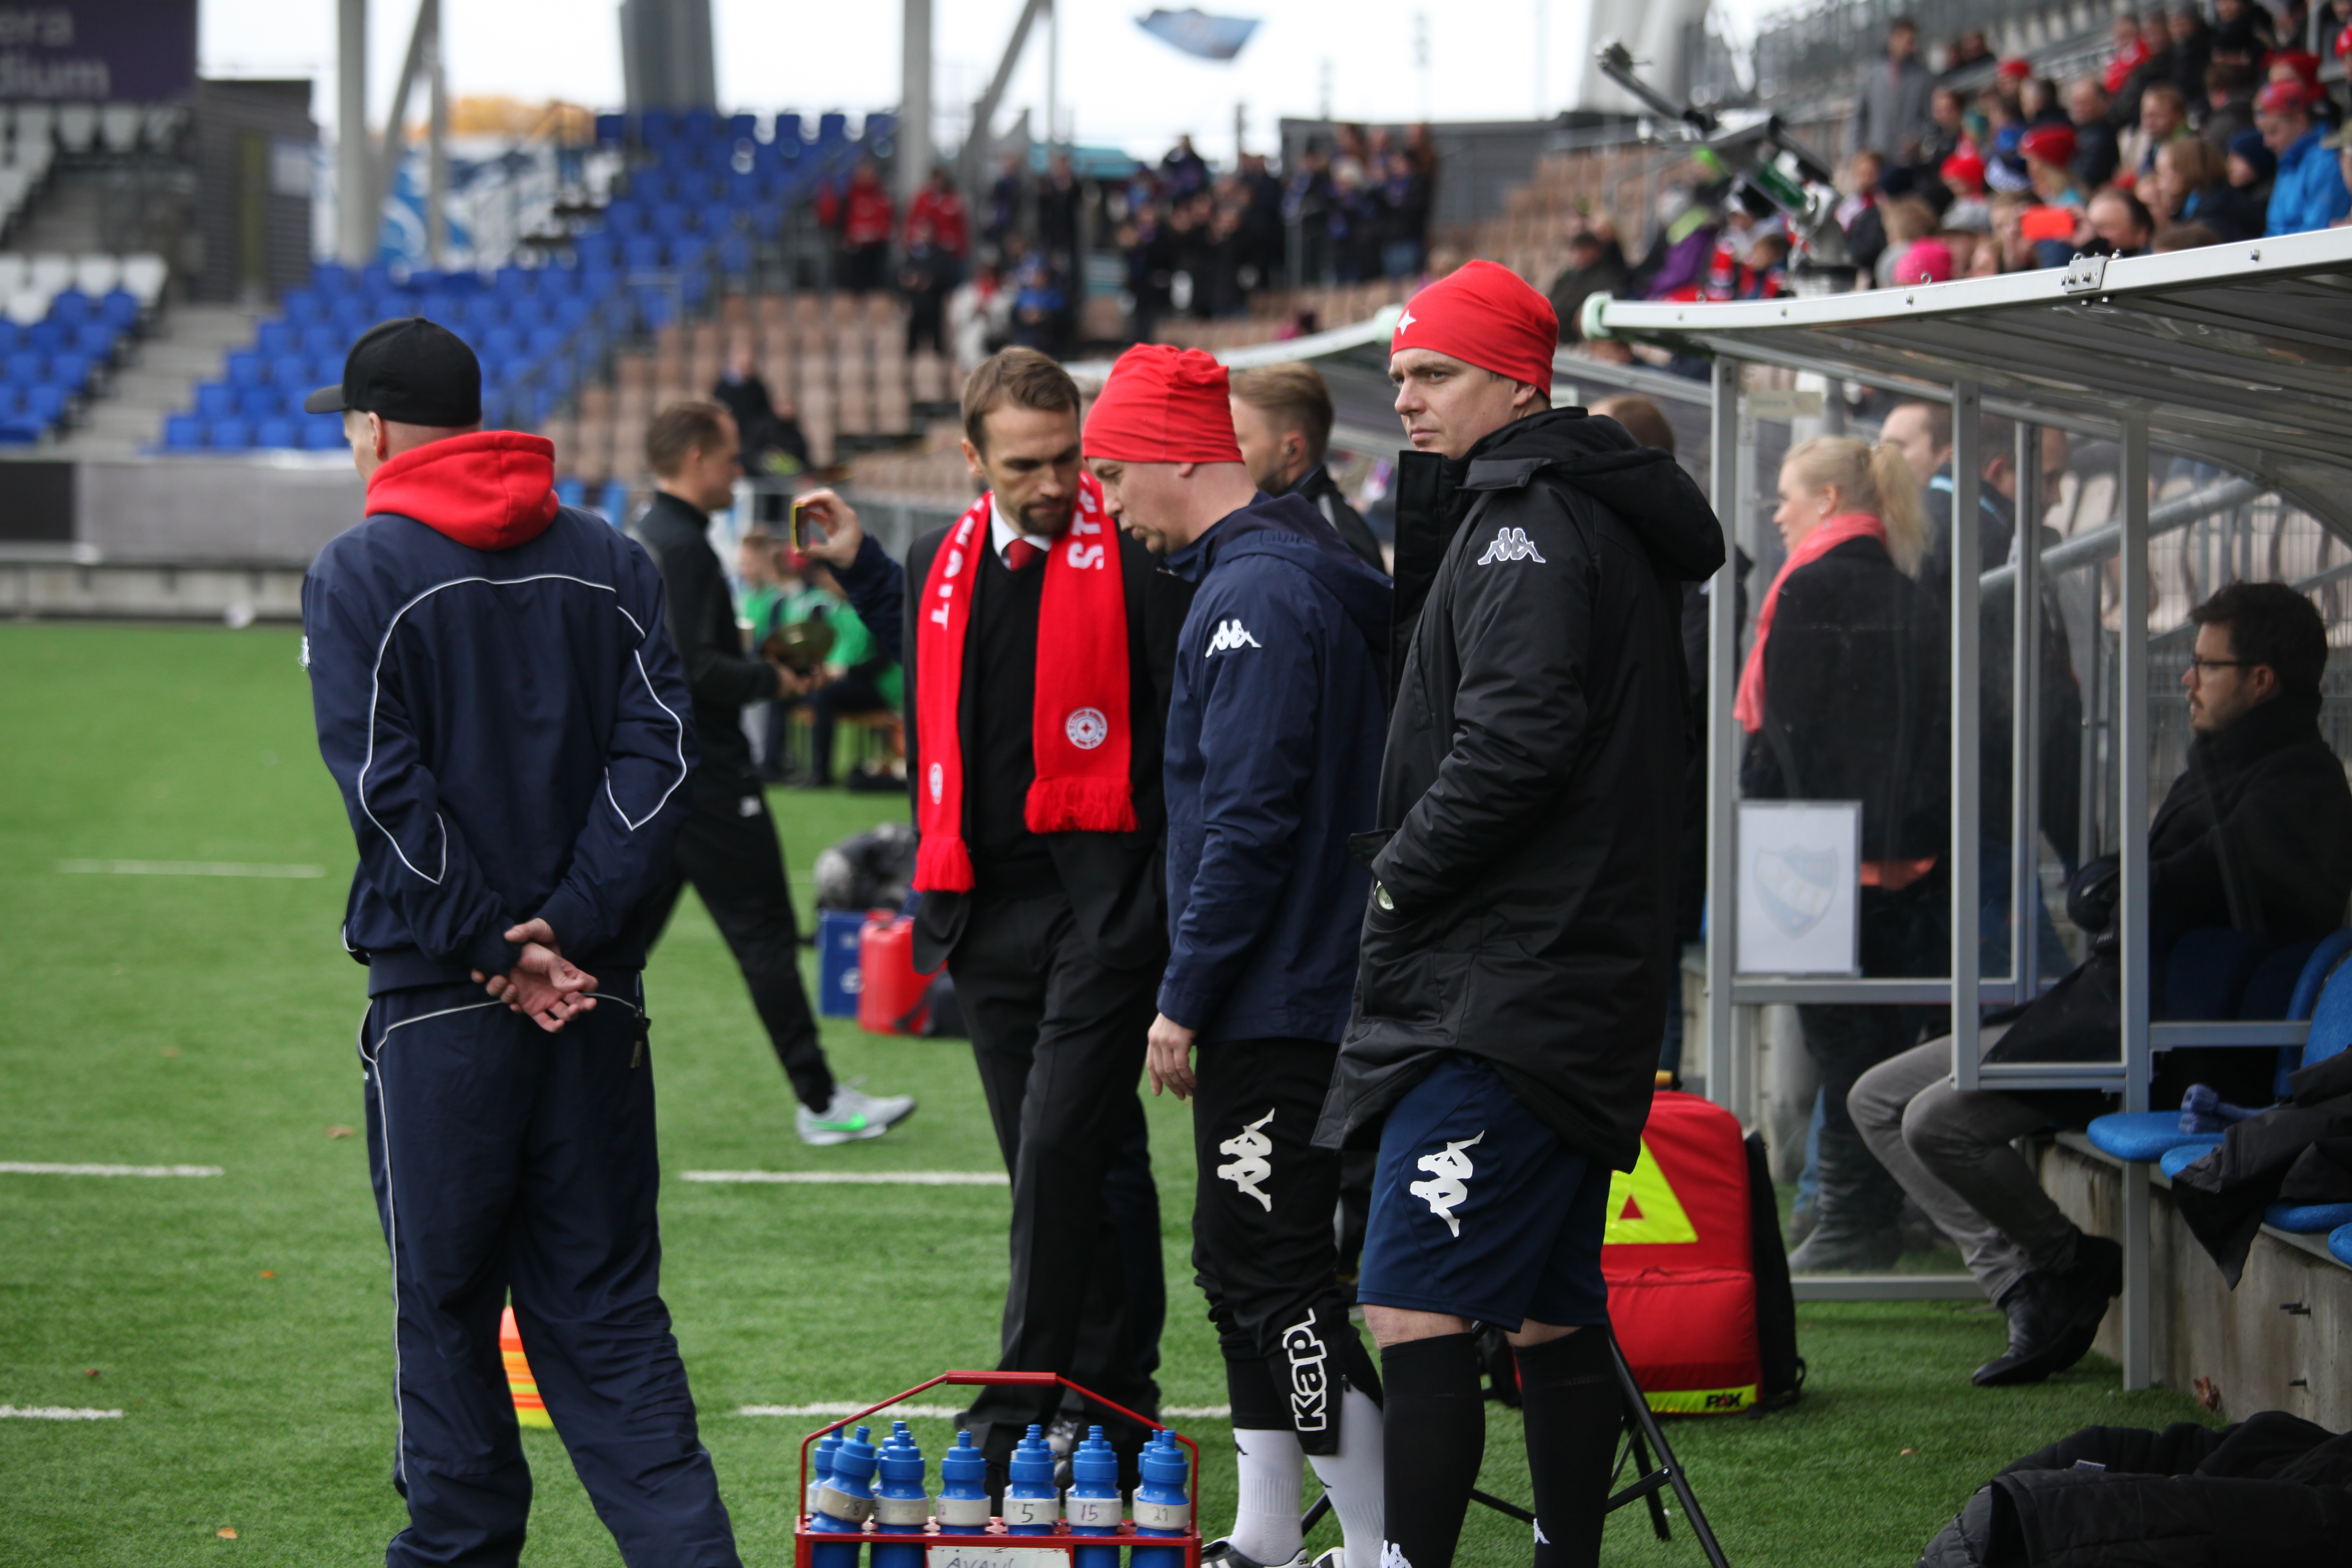 IFK:n valmennus vahvistuu entisestään – Kankkunen A-junioreiden päävalmentajaksi